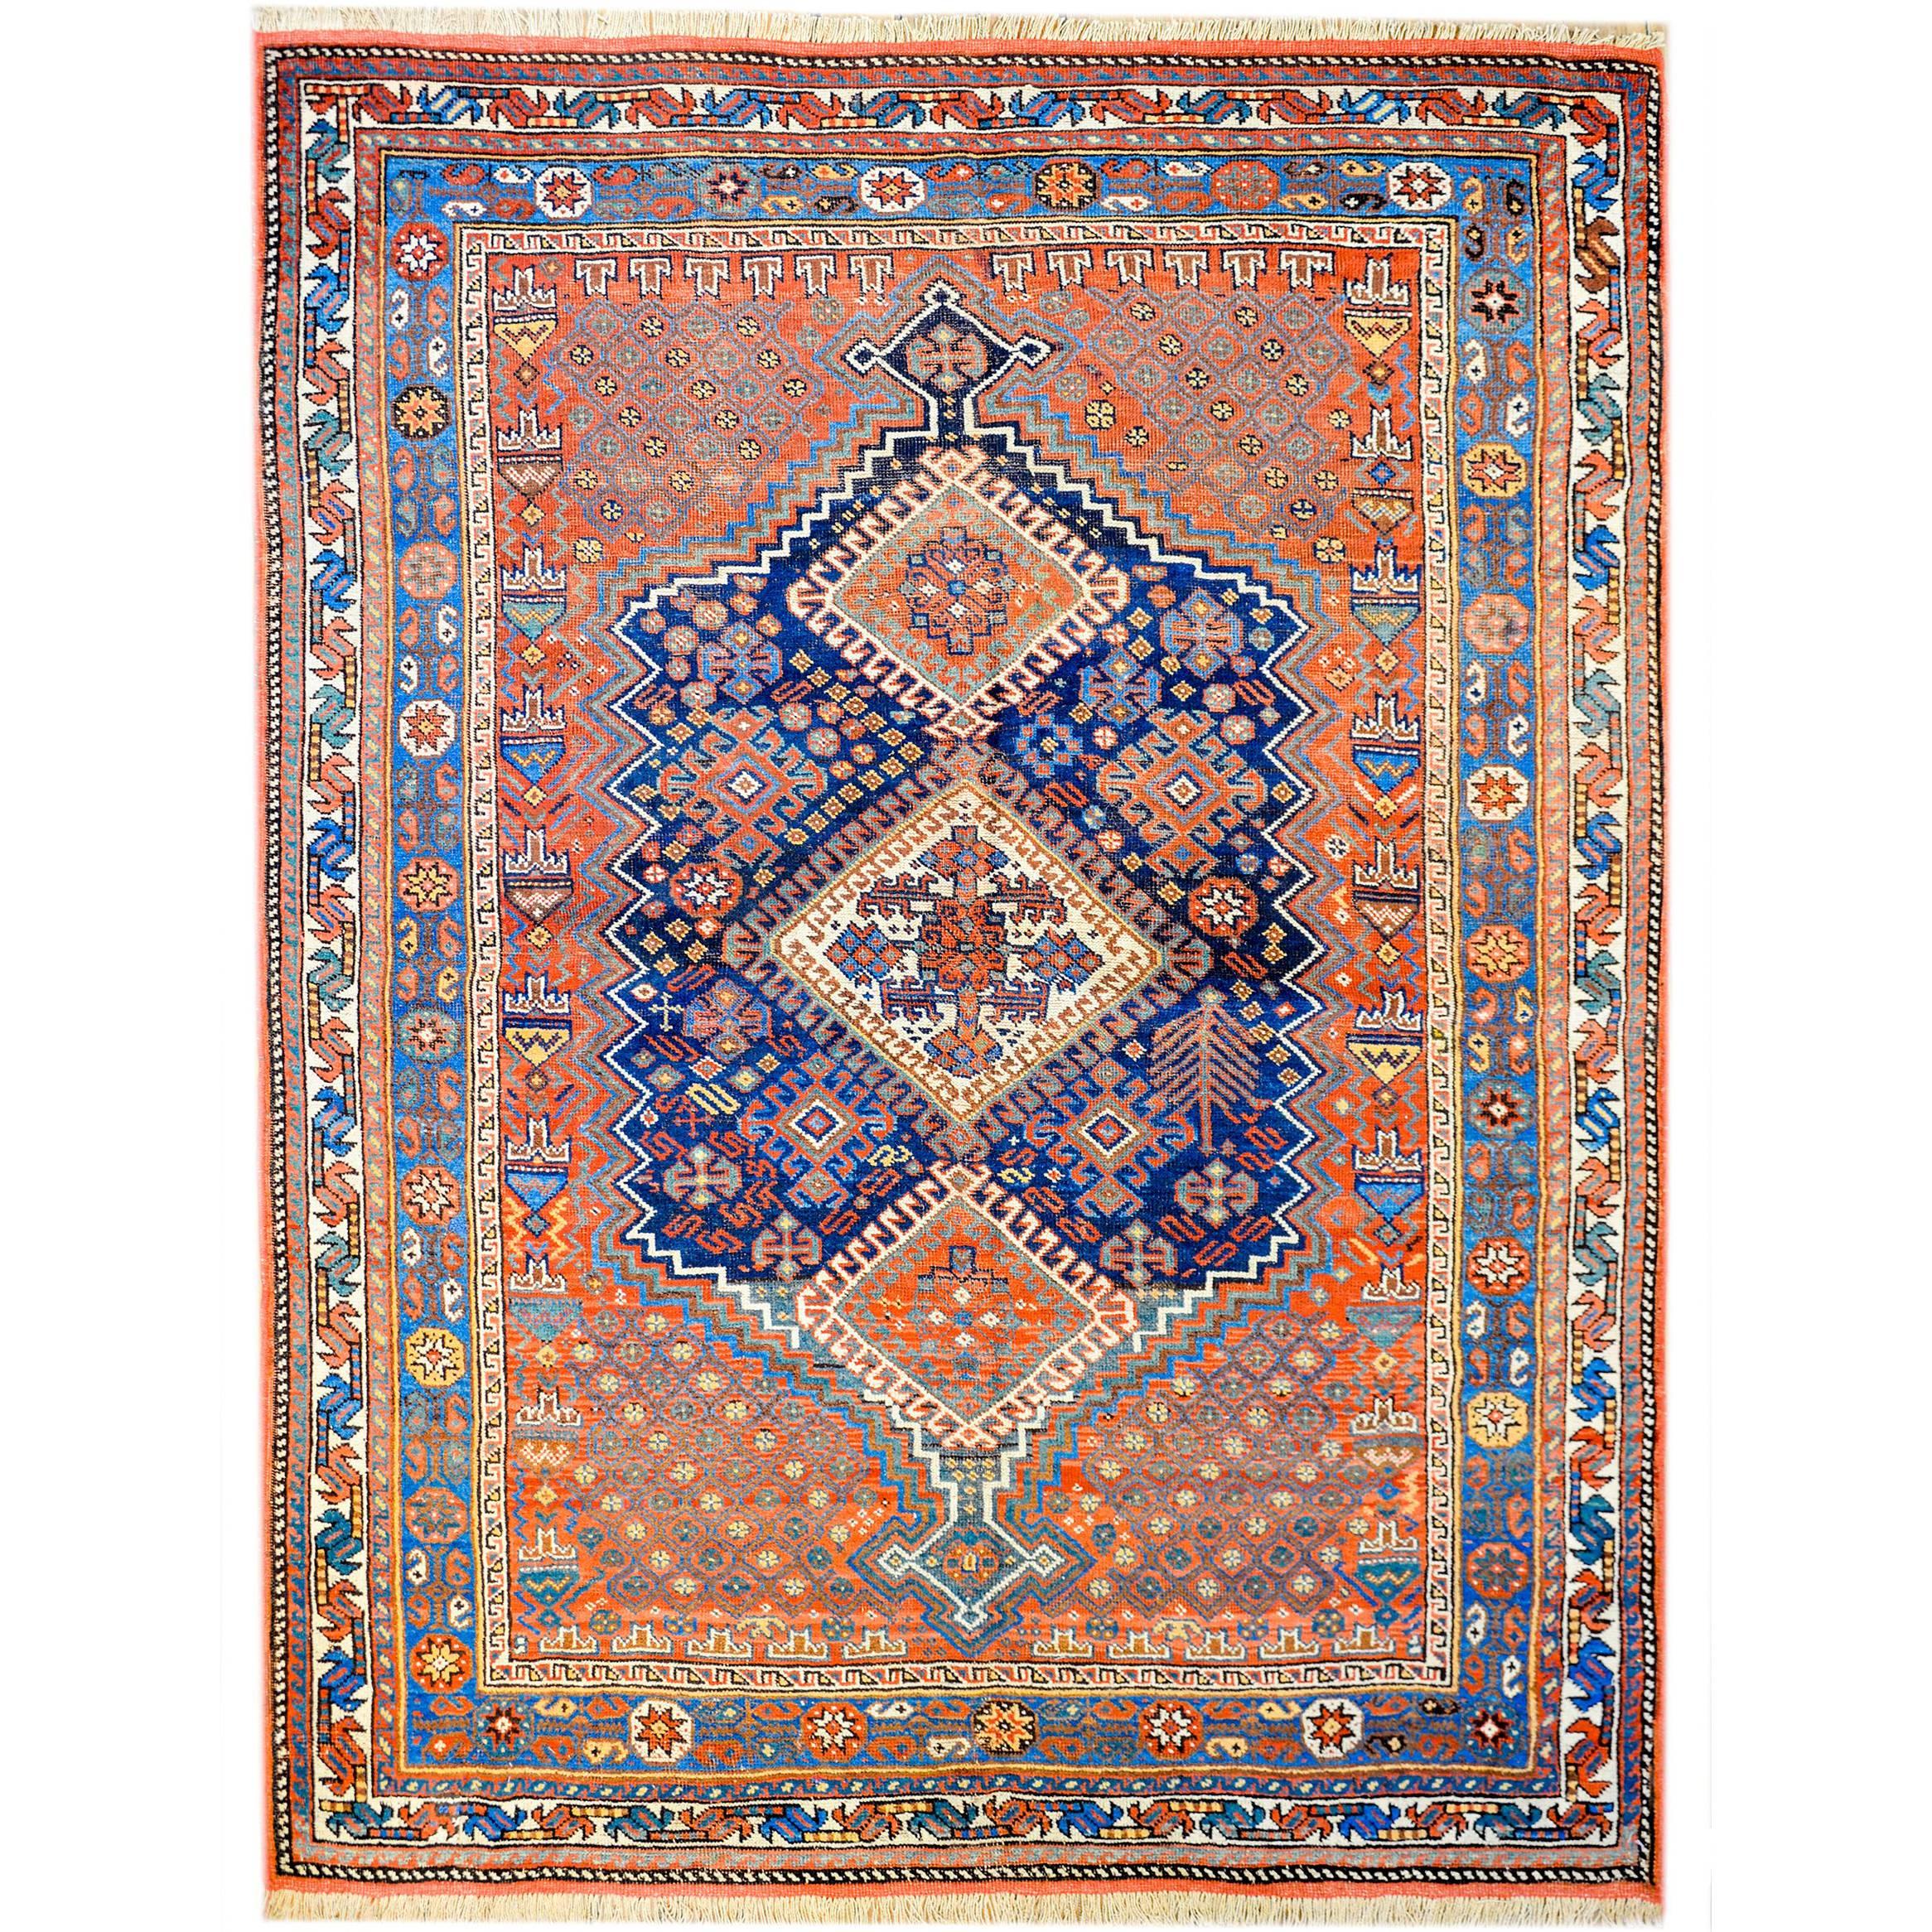 Unglaublicher Ghashghaei-Teppich aus dem frühen 20. Jahrhundert